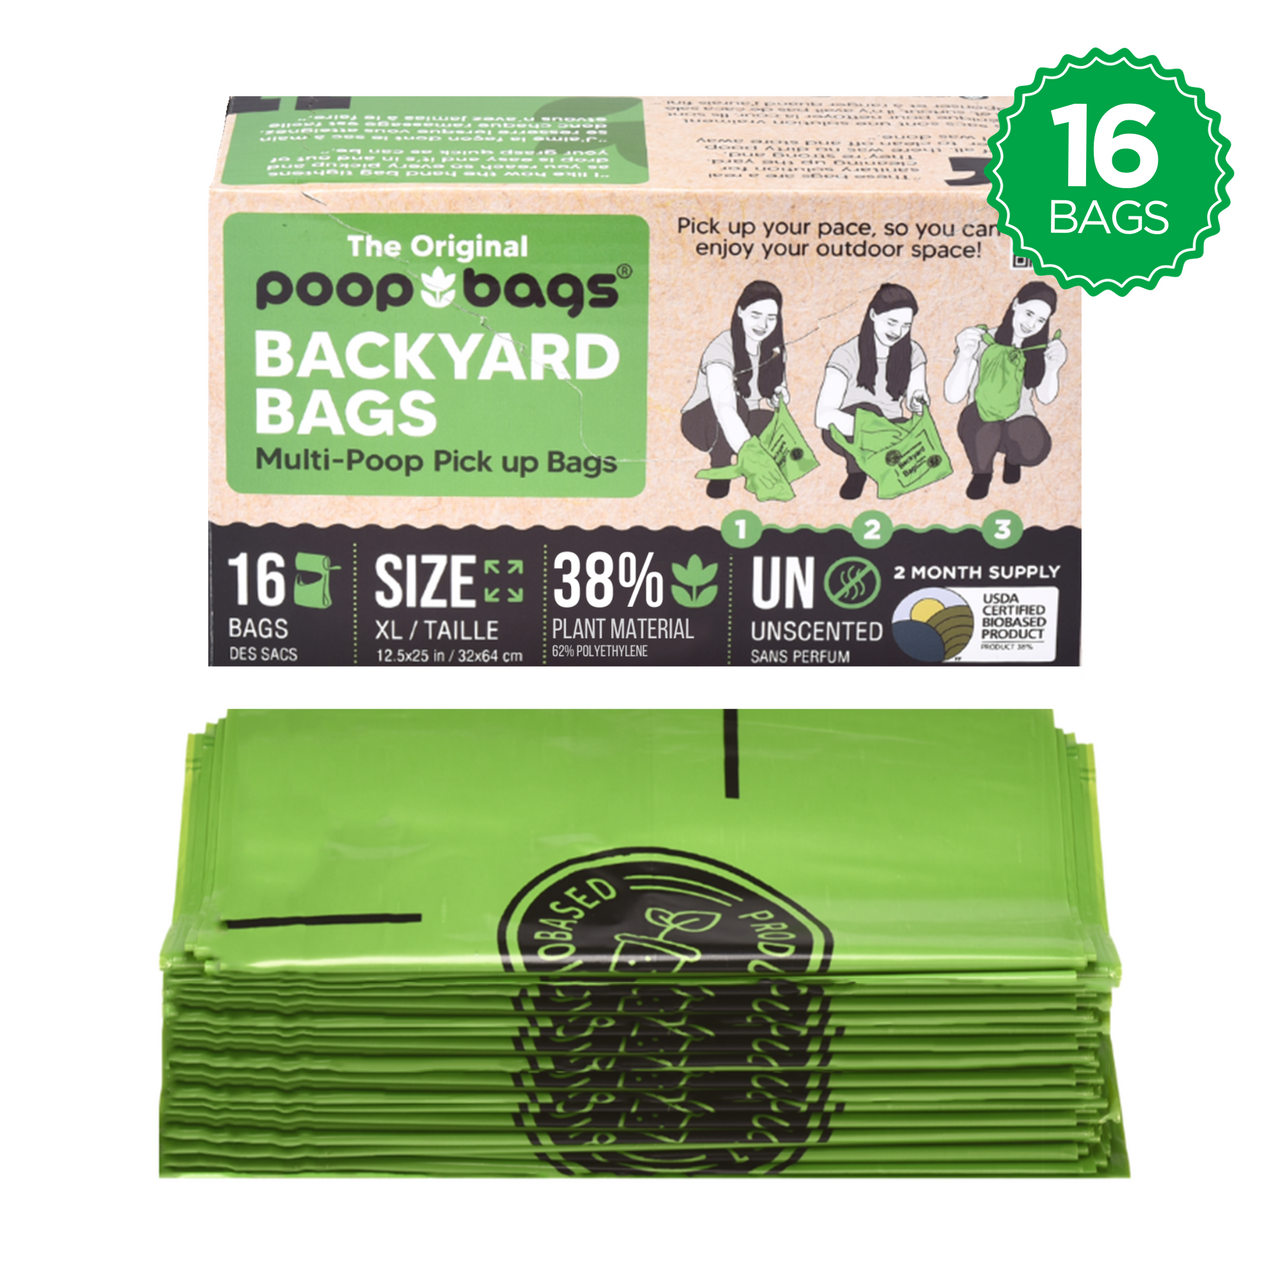 The Original Poop Bags® 16 Pick-Up Backyard Bags